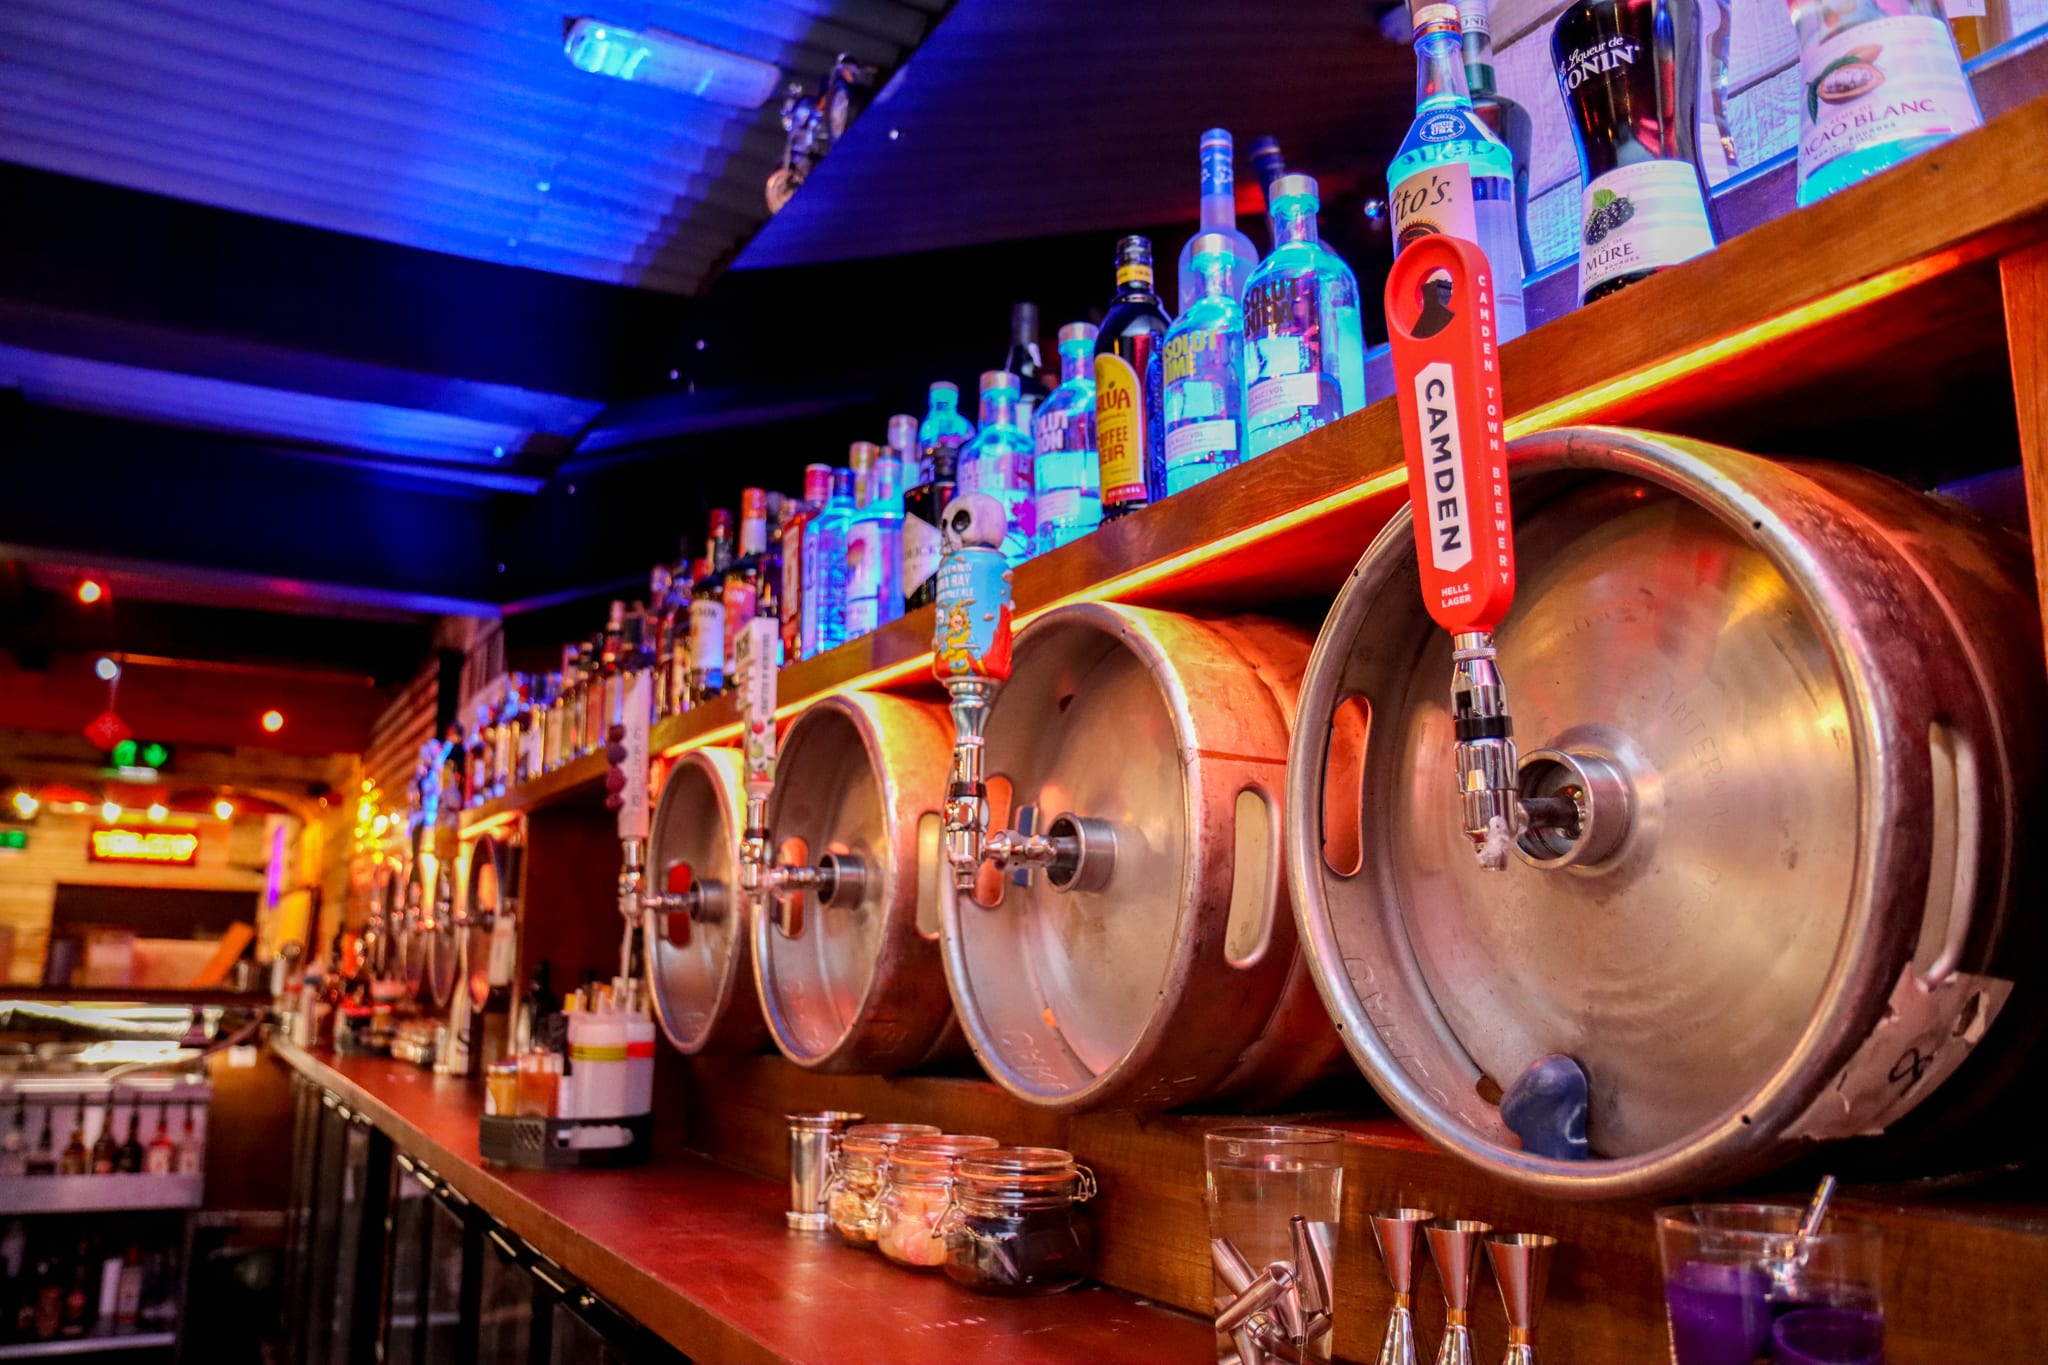 kegs-and-spirit-bottles-lined-up-across-bar